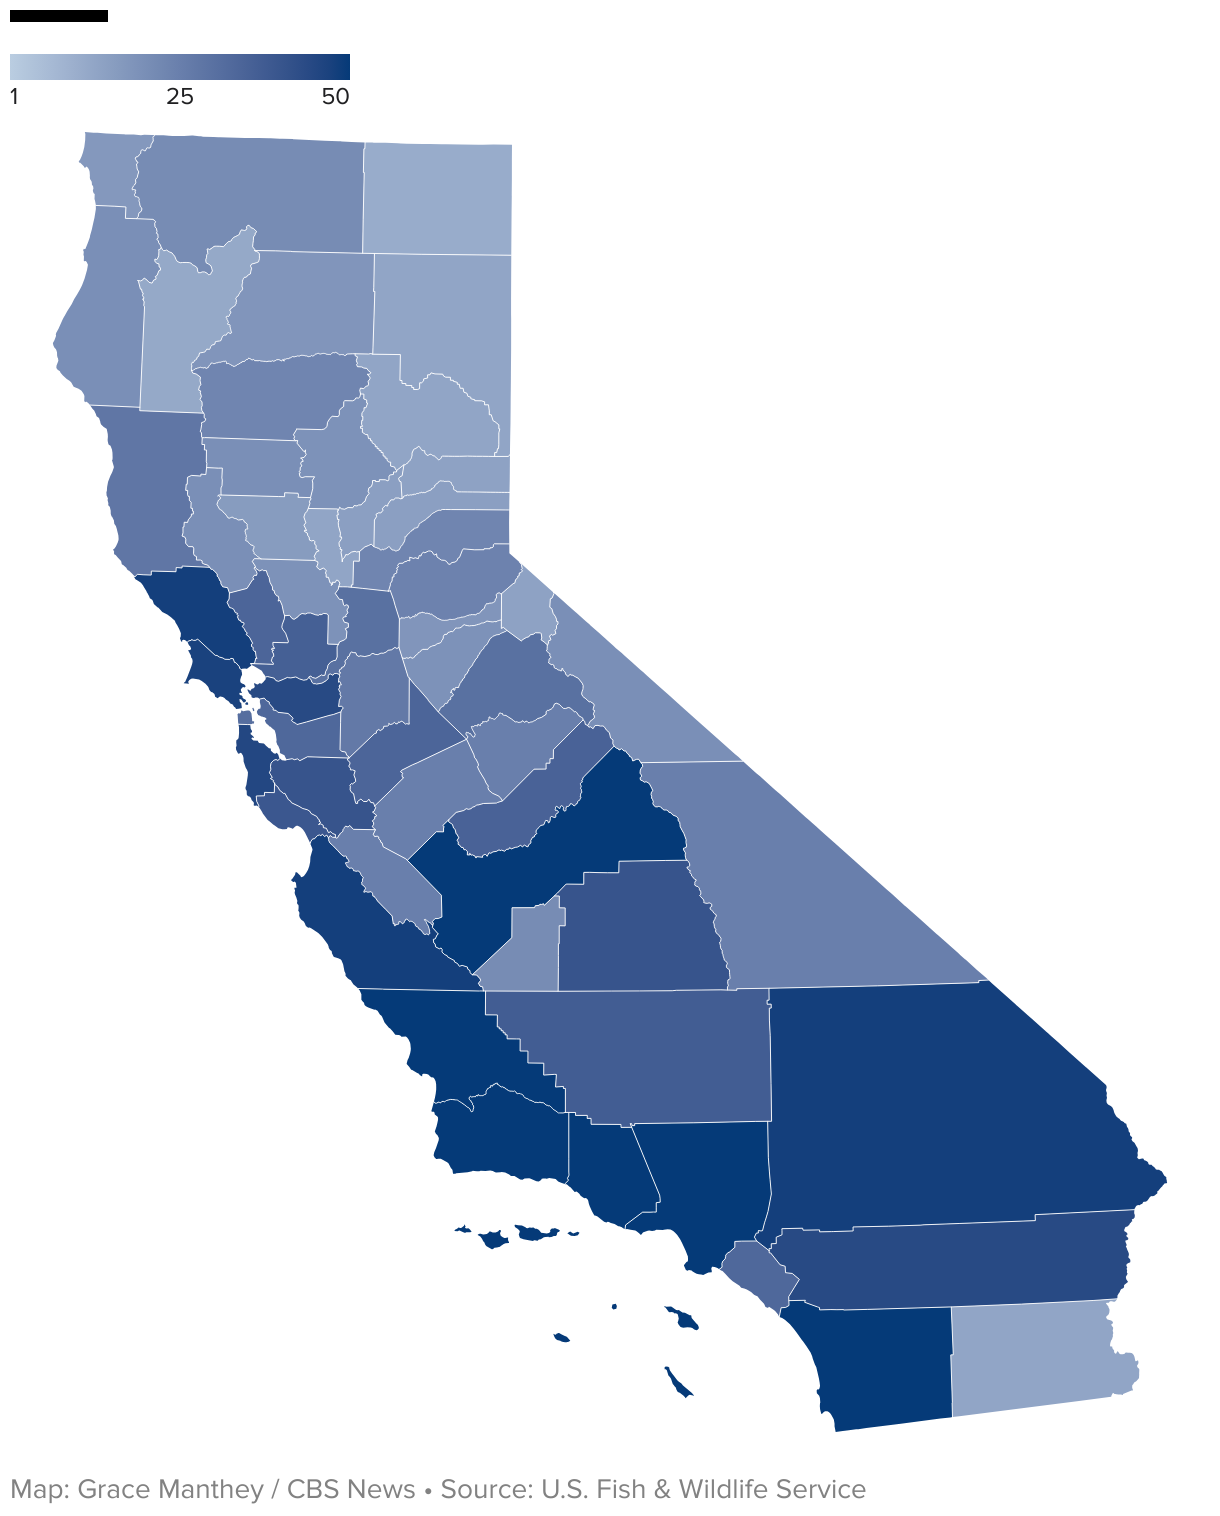 ایک نقشہ جس میں کیلیفورنیا میں کاؤنٹی کے لحاظ سے خطرے سے دوچار پرجاتیوں کی تعداد دکھایا گیا ہے، جس کا رنگ نیلے رنگ میں ہے۔  ساحلی، وسطی اور جنوبی کیلیفورنیا میں سب سے زیادہ تعداد ہے۔